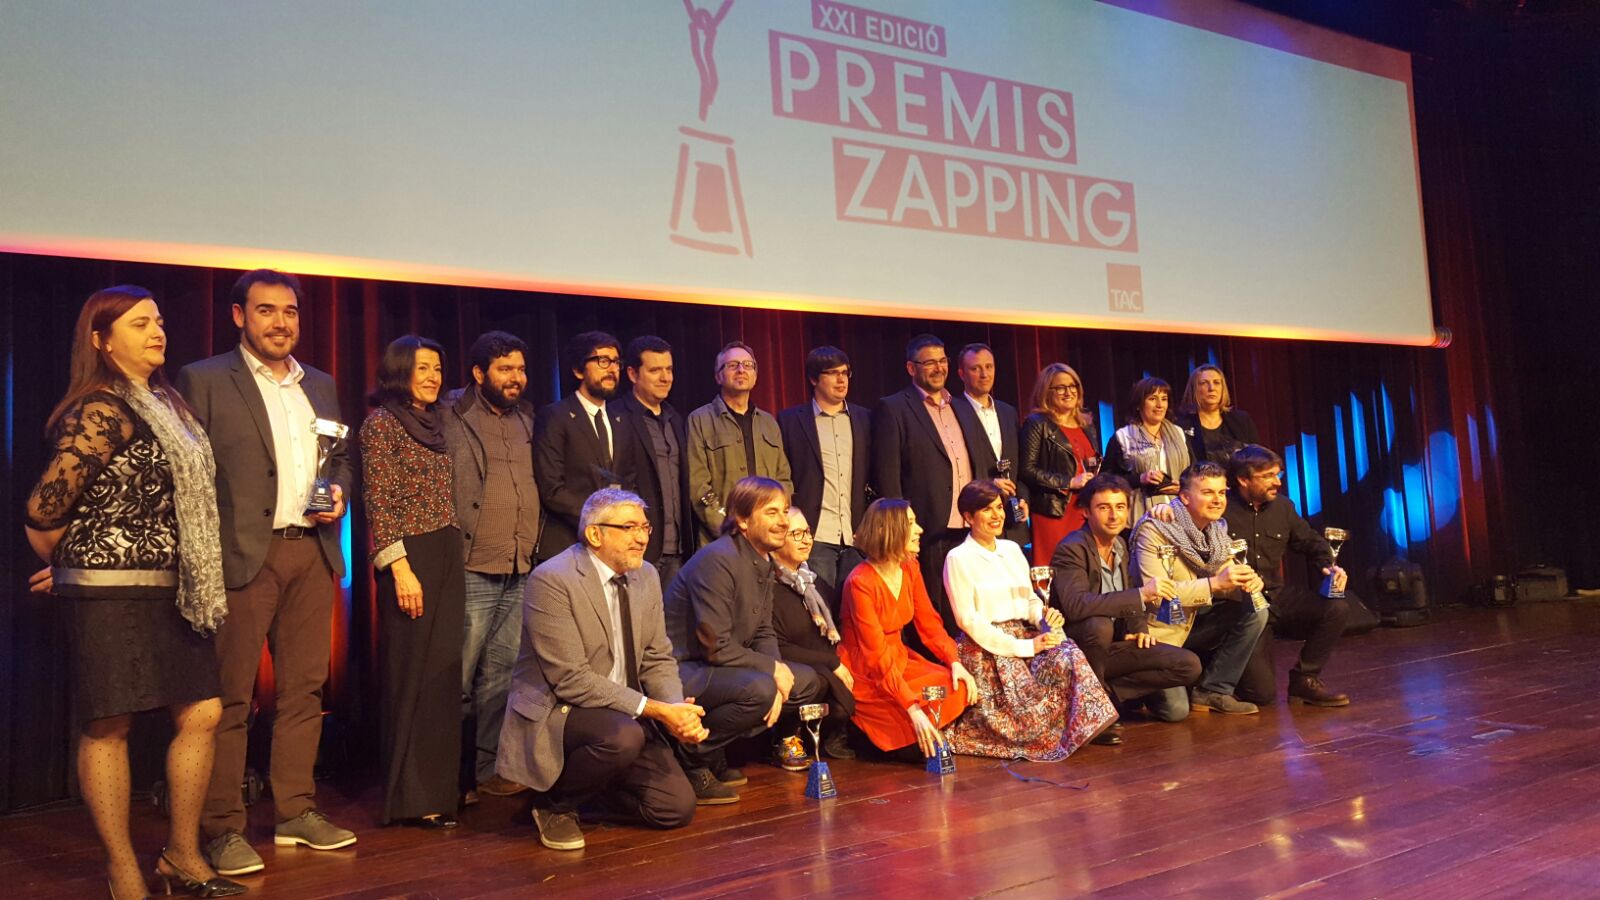 Premio “Valores” para Cinergía de Gas Natural Fenosa en los Premios Zapping.